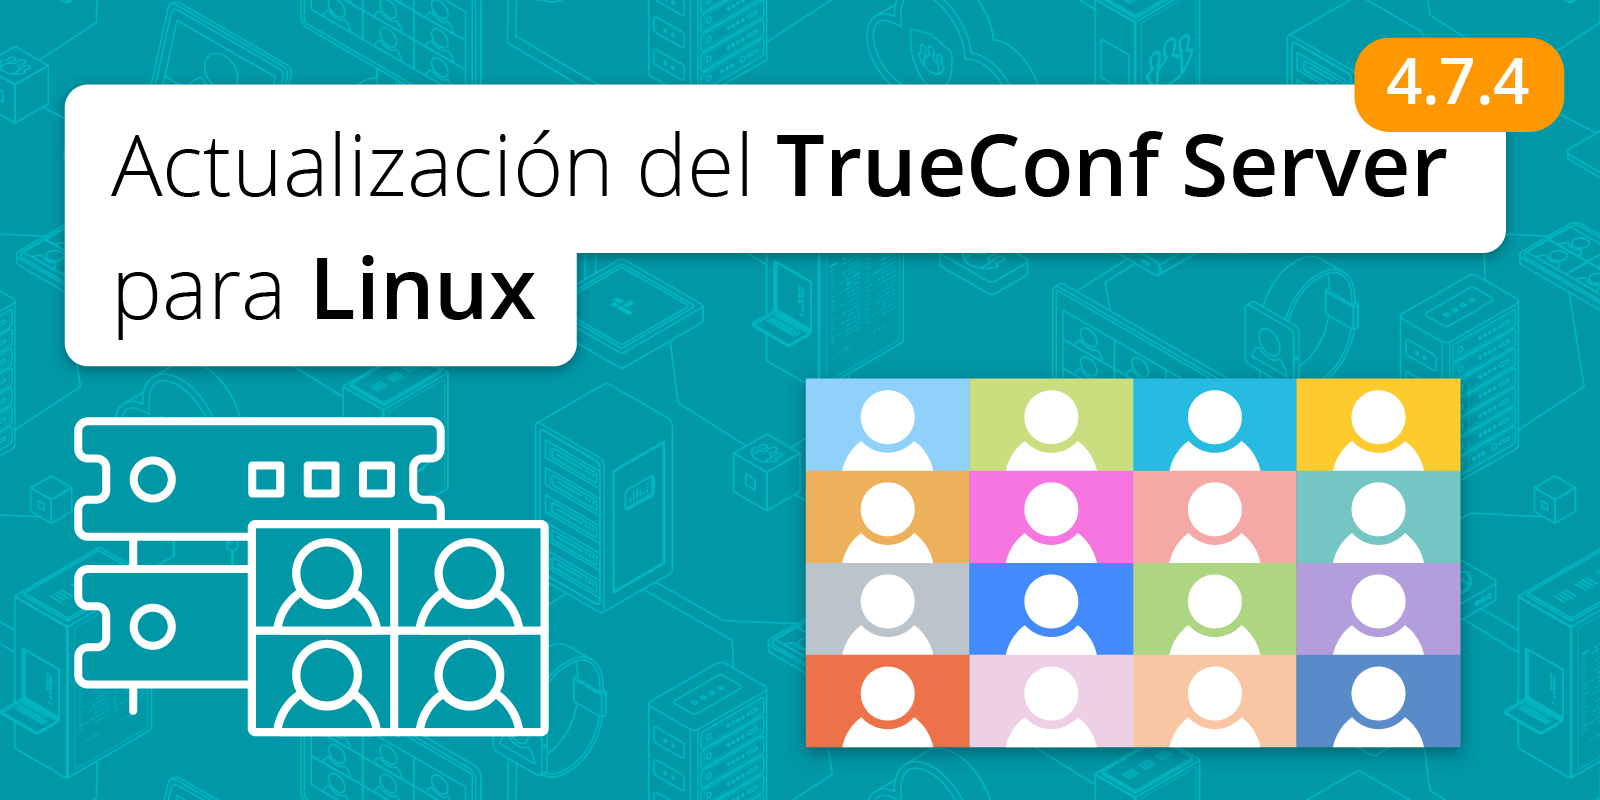 TrueConf Server 4.7.4 para Linux: compatibilidad con Debian 11 3